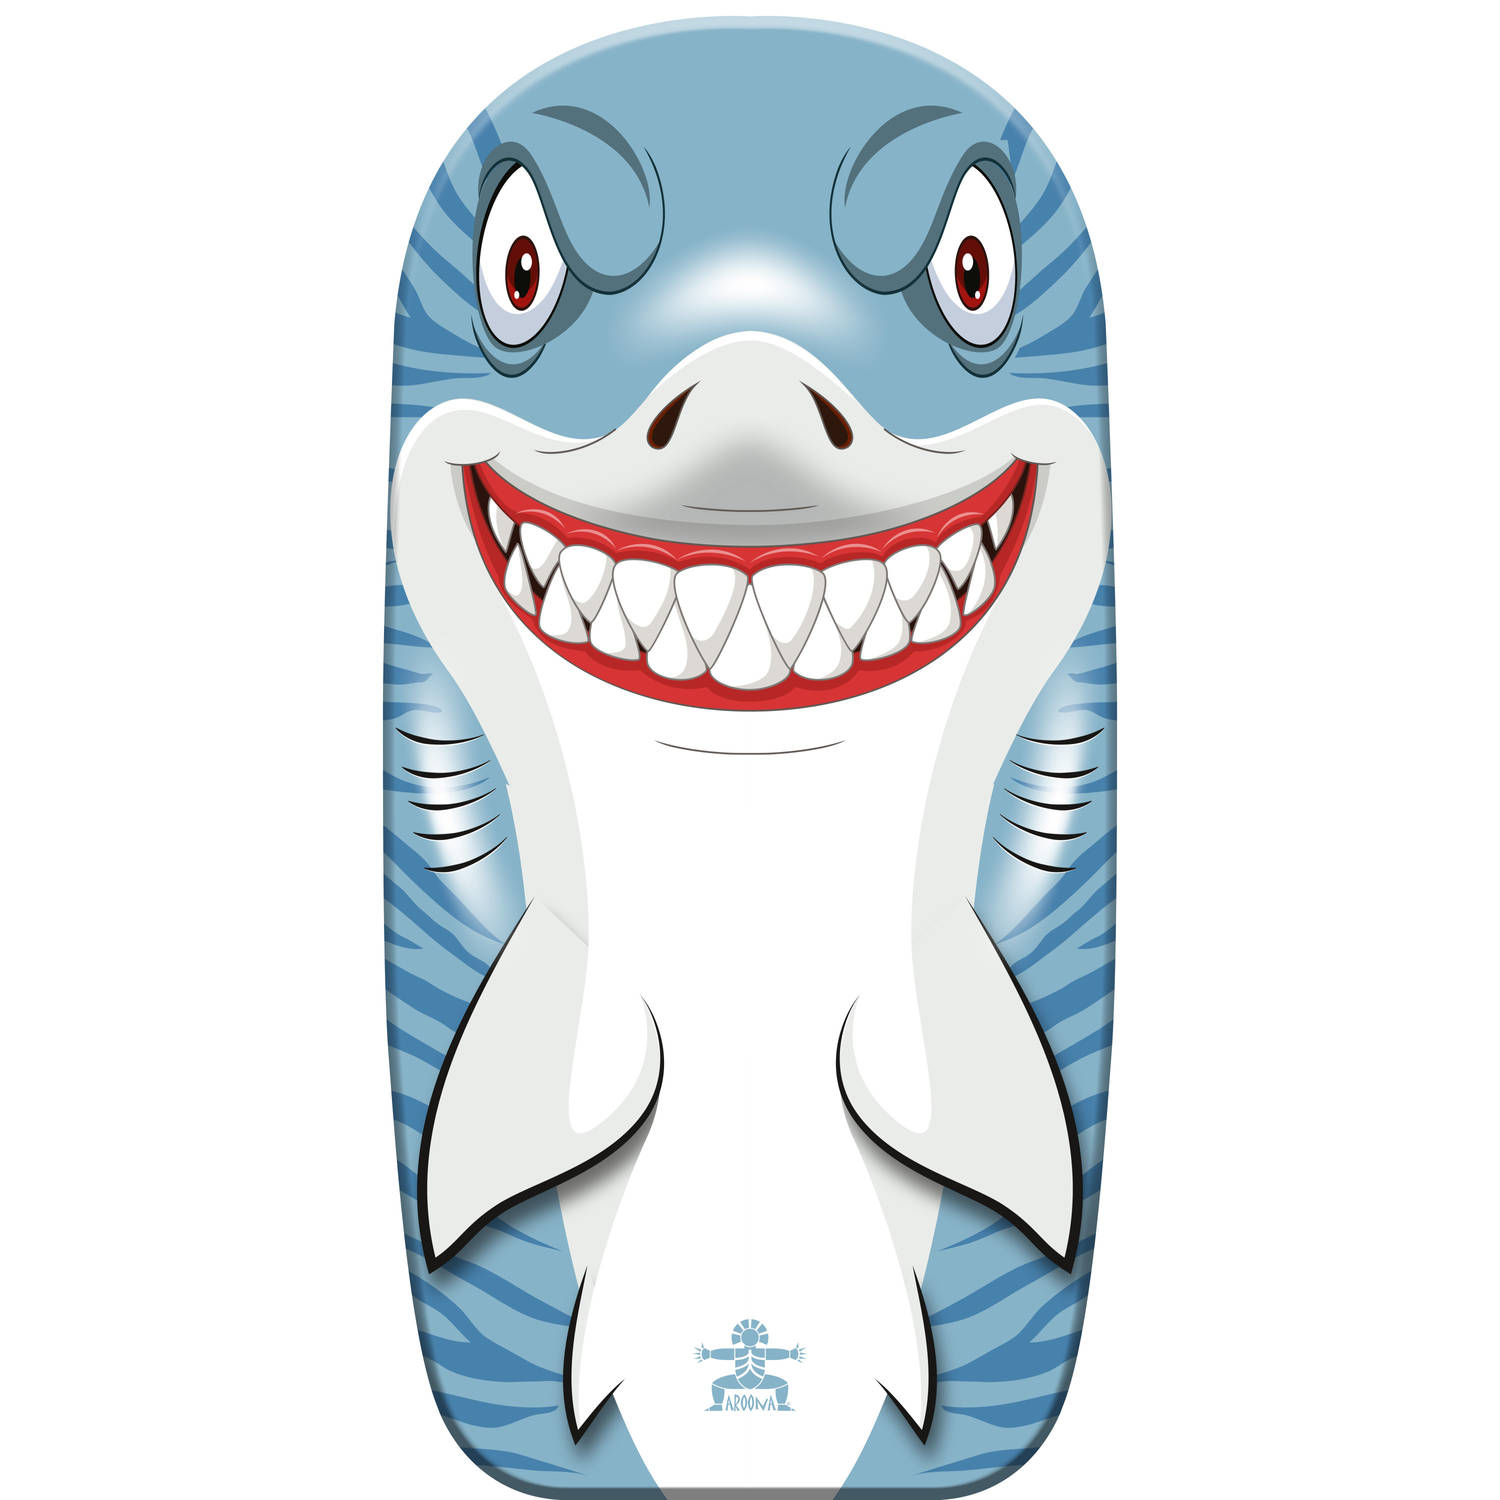 Bodyboard haai kunststof lichtblauw-wit 82 x 46 cm Bodyboard